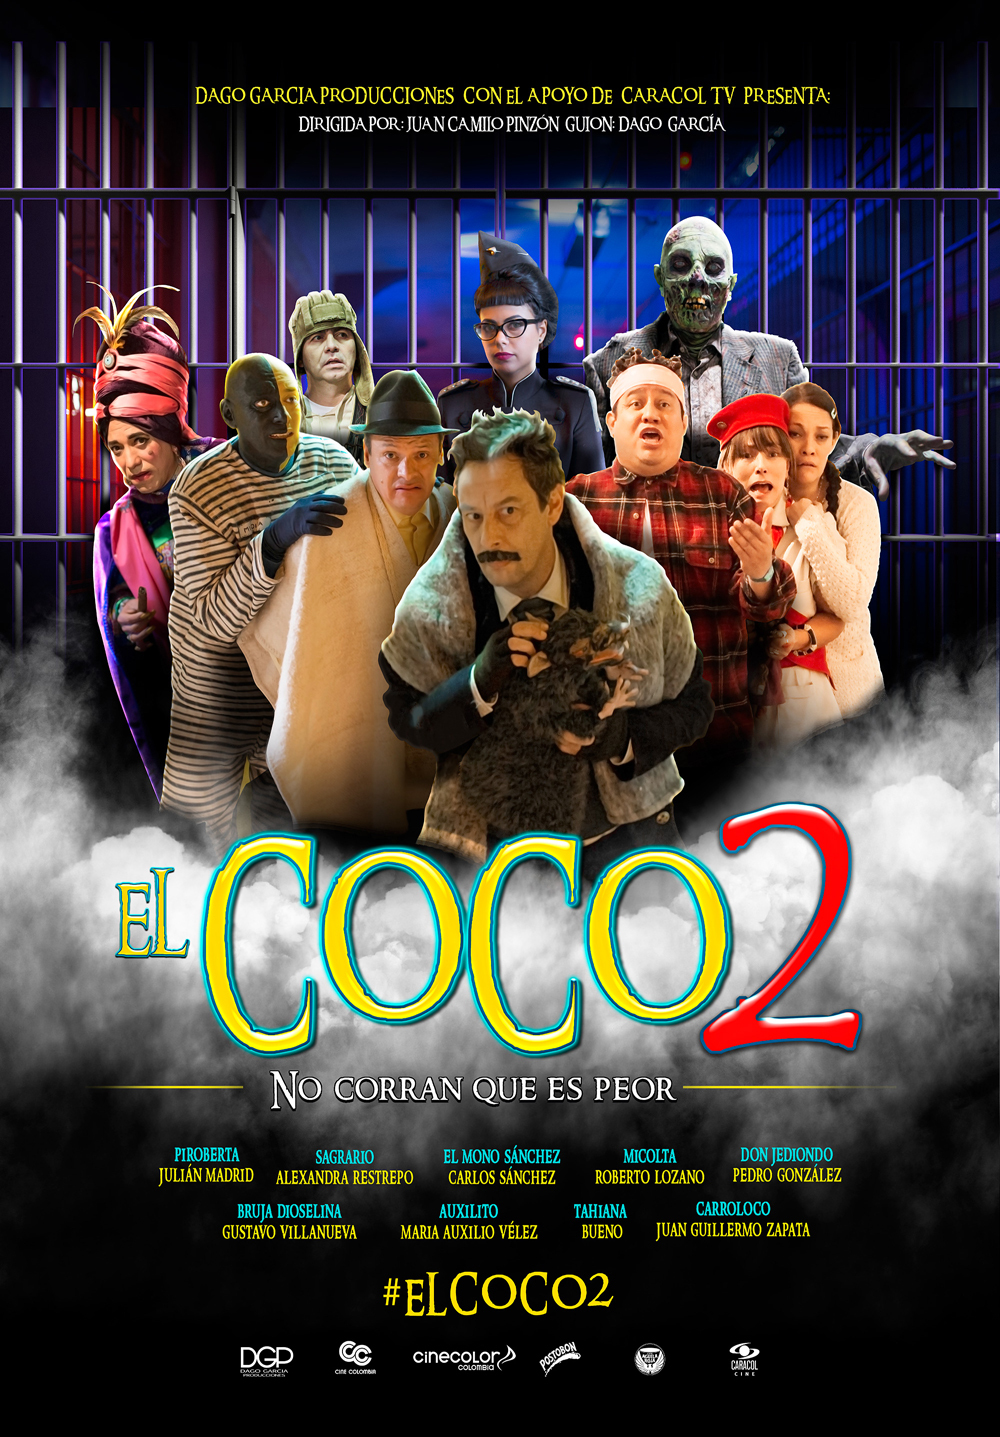 Cine colombiano: El COCO 2 | Proimágenes Colombia